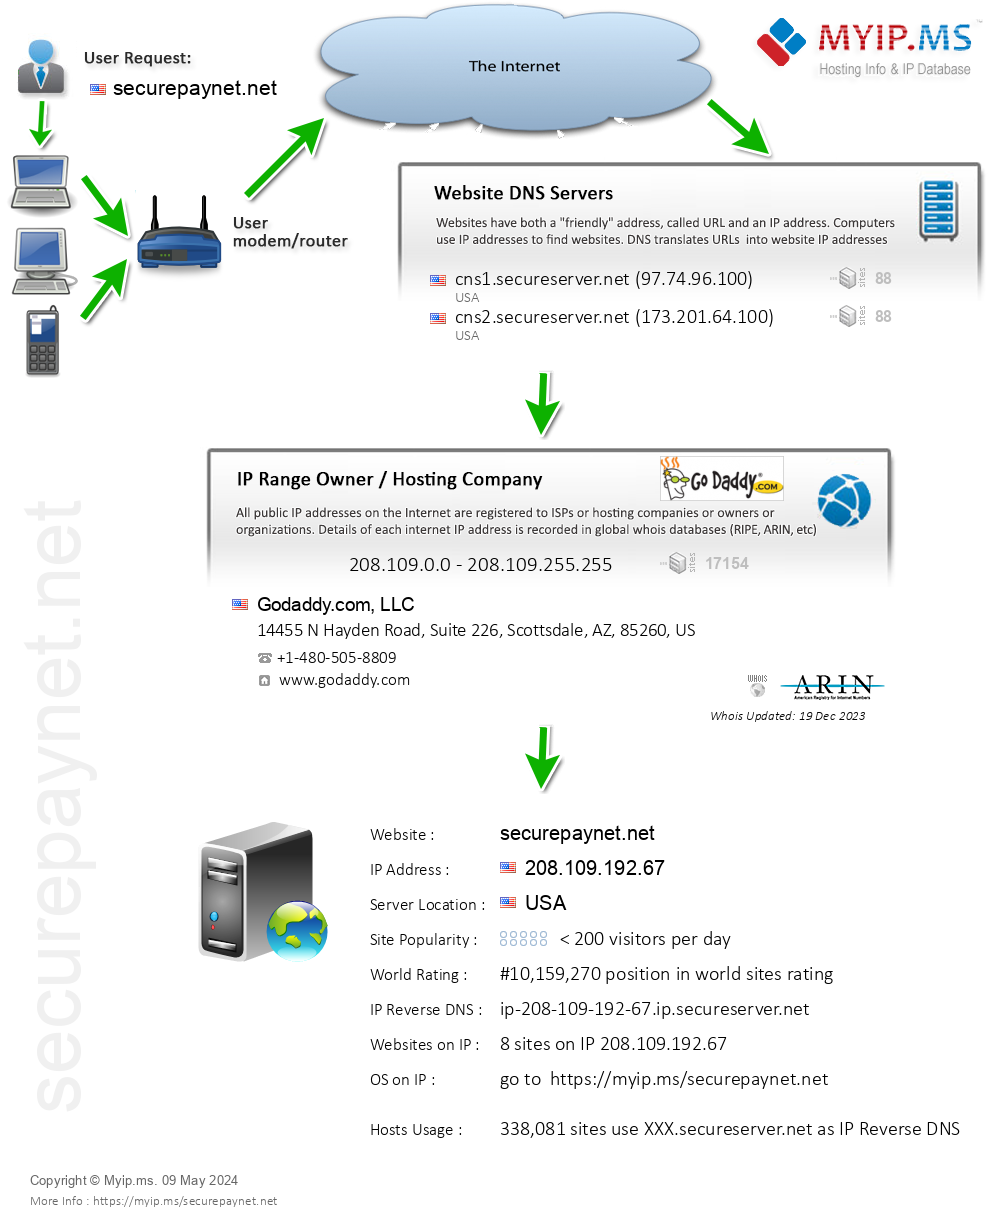 Securepaynet.net - Website Hosting Visual IP Diagram